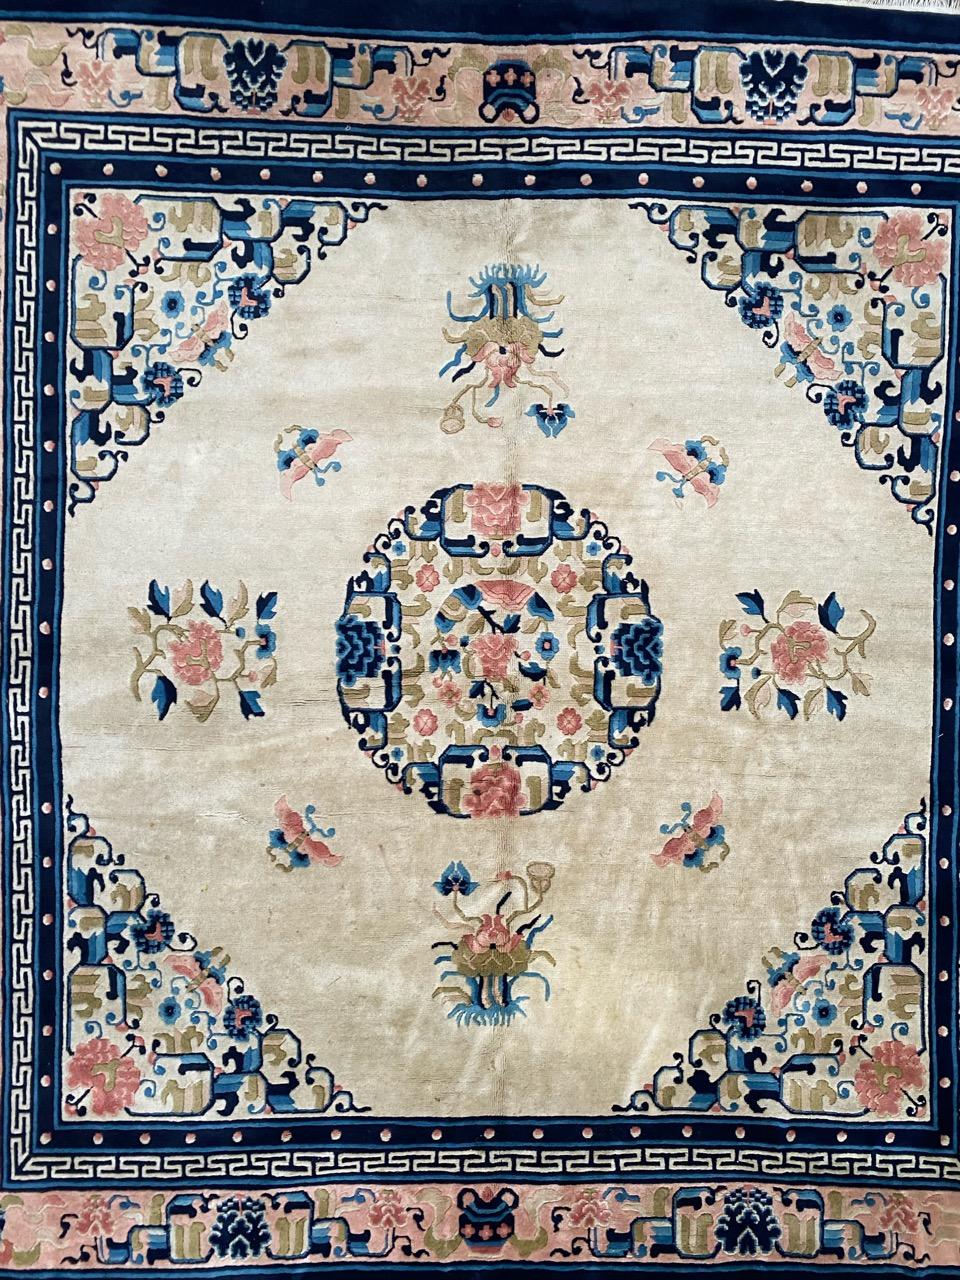 Sehr schöner chinesischer Peking-Teppich aus der Mitte des Jahrhunderts mit schönem chinesischen Art-Déco-Design und schönen hellen Farben, vollständig und fein handgeknüpft mit Wollsamt auf Baumwollbasis.

✨✨✨
